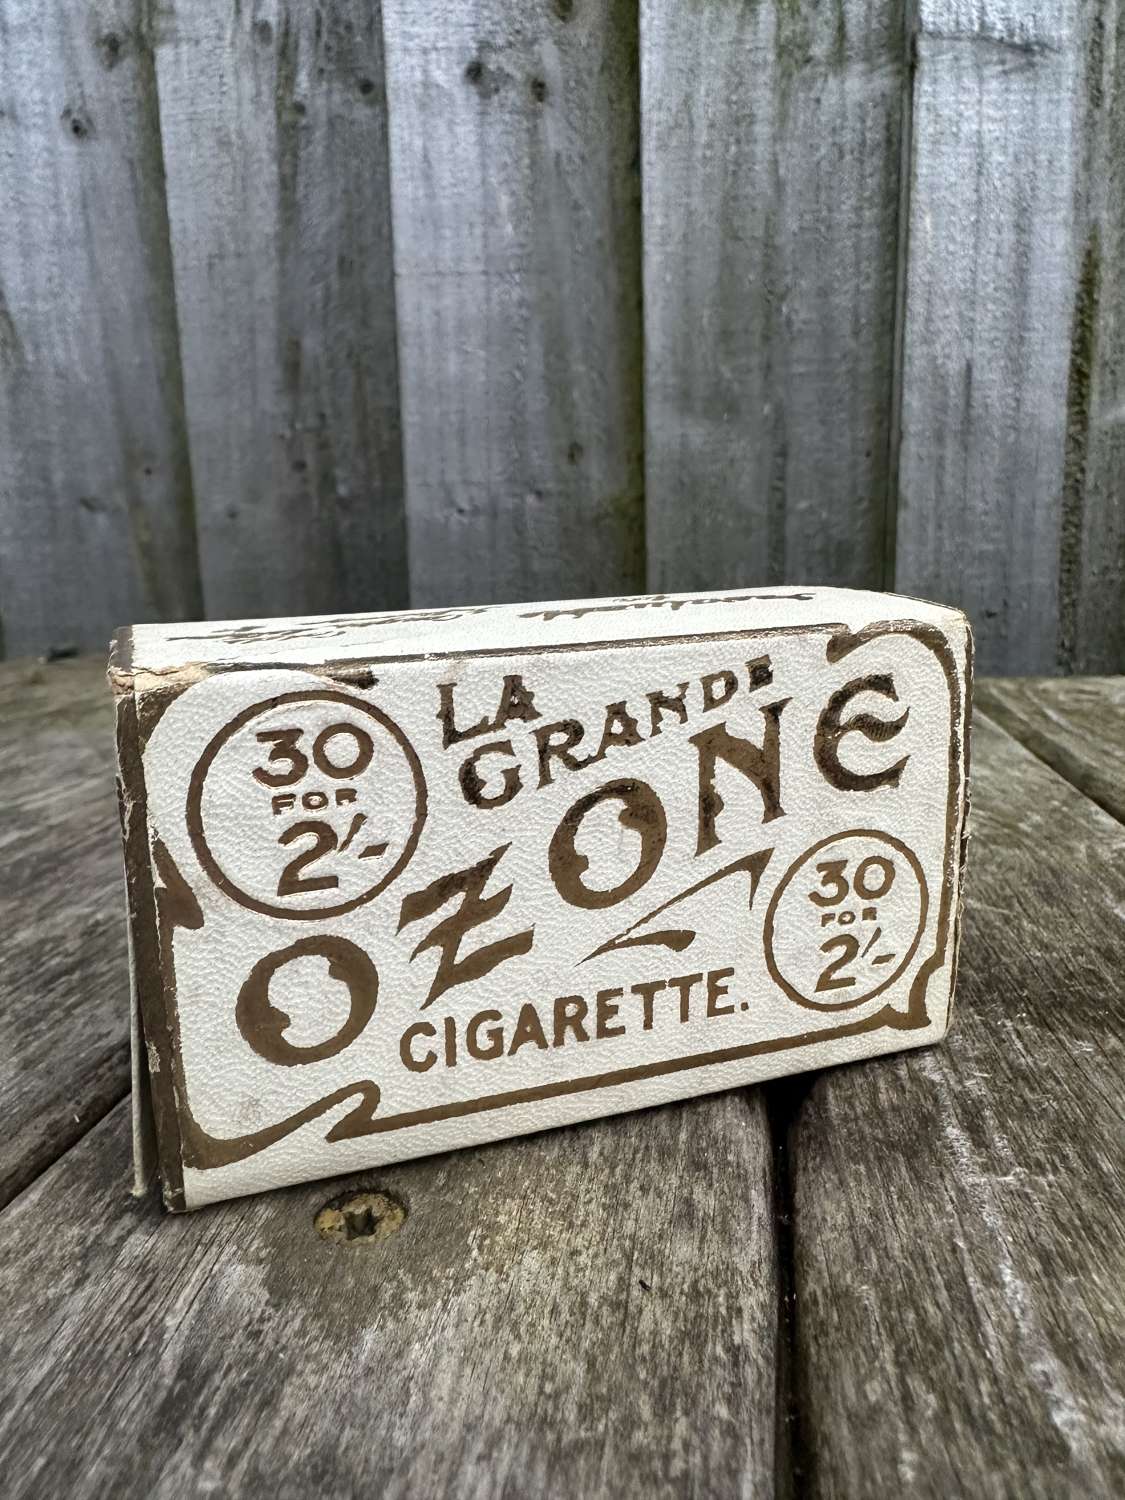 Unusual medical cigarette pack live